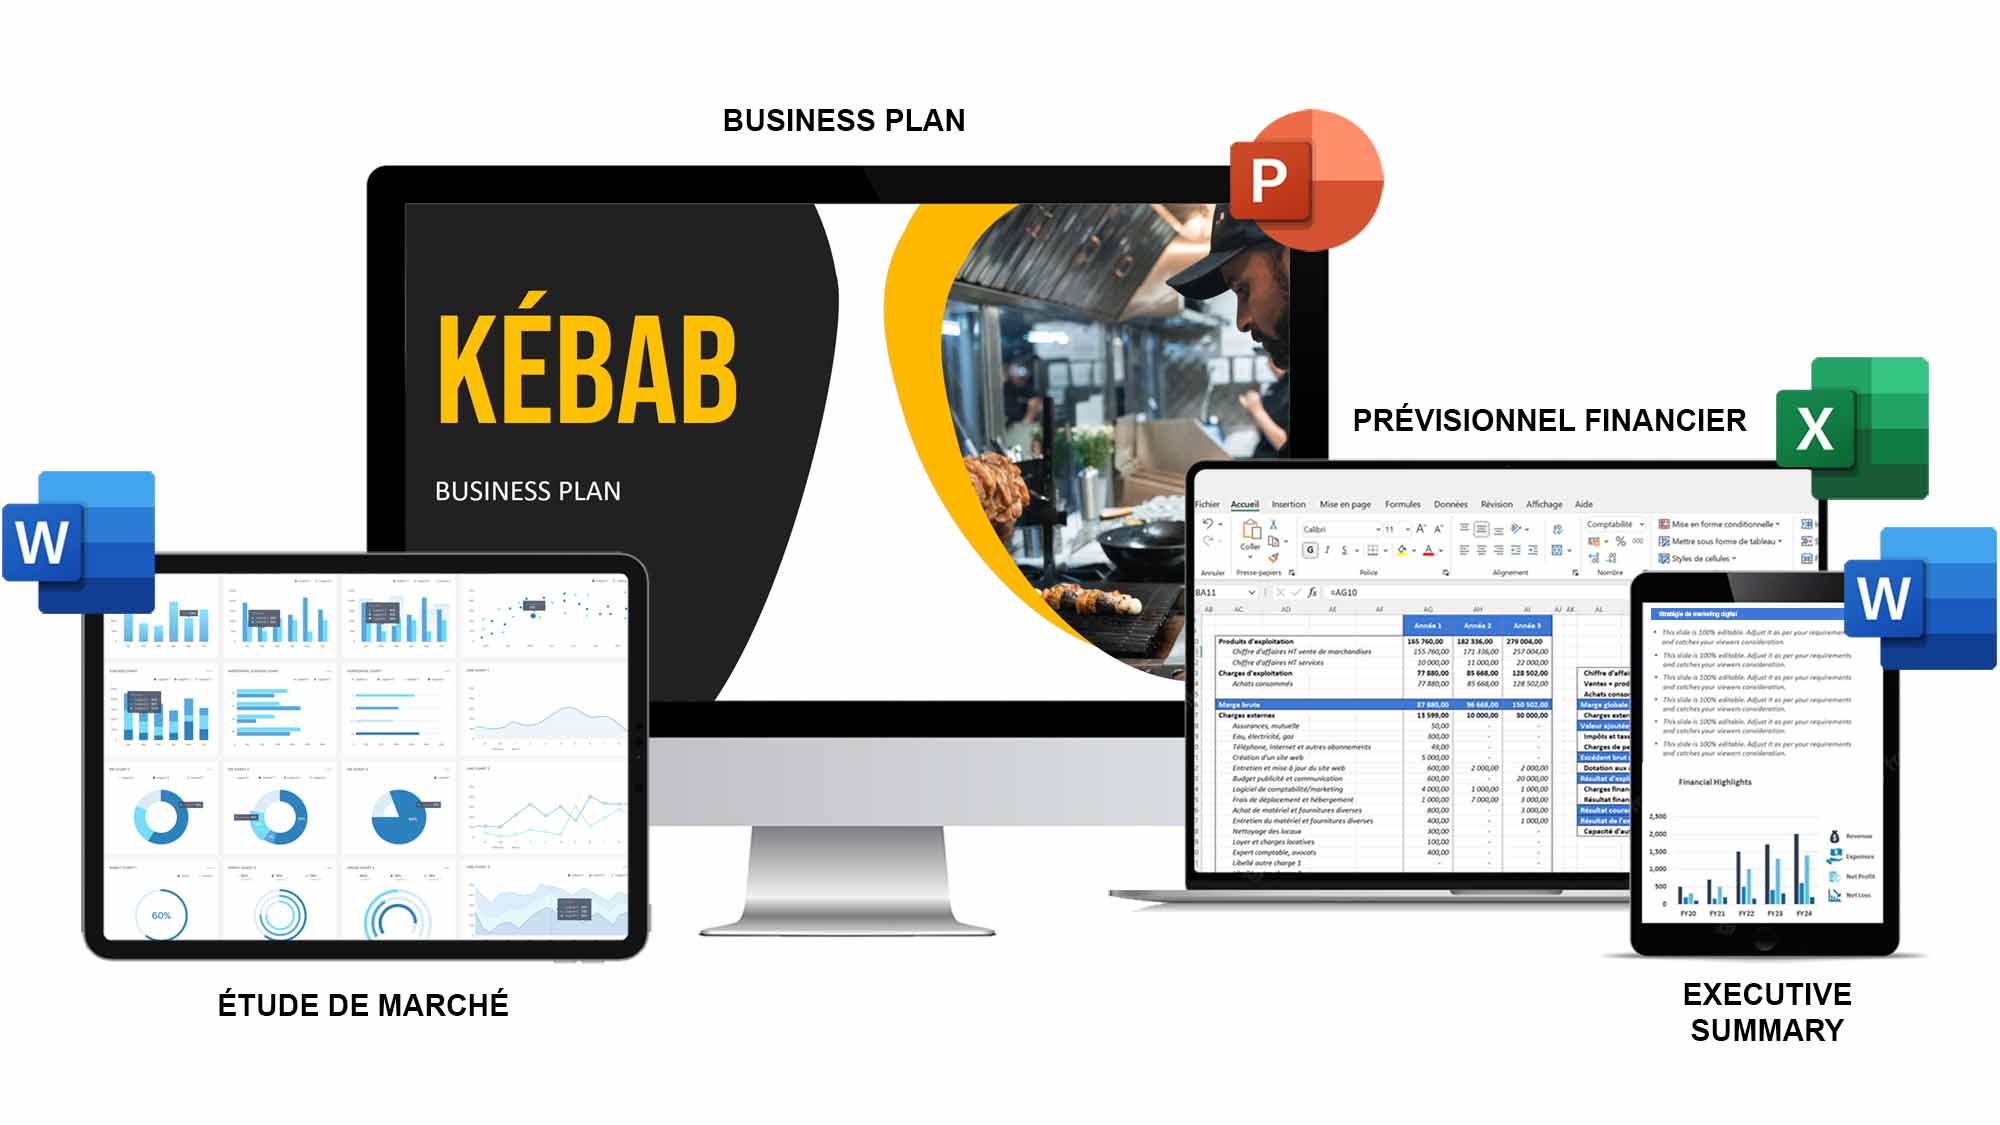 business plan d'un kebab